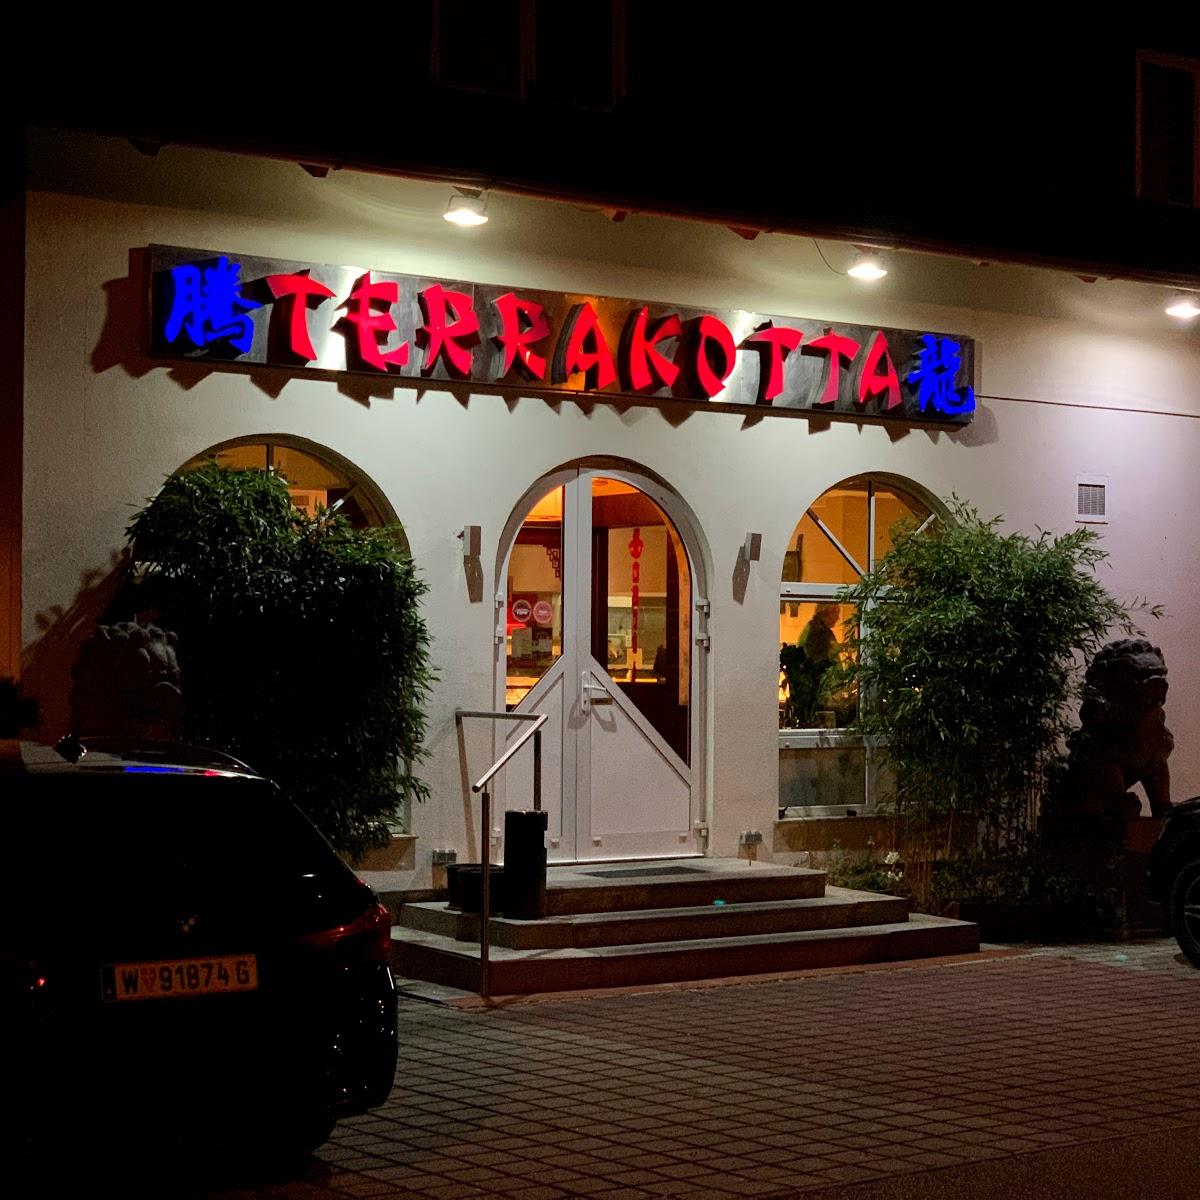 Restaurant "Terrakotta" in Kottingbrunn